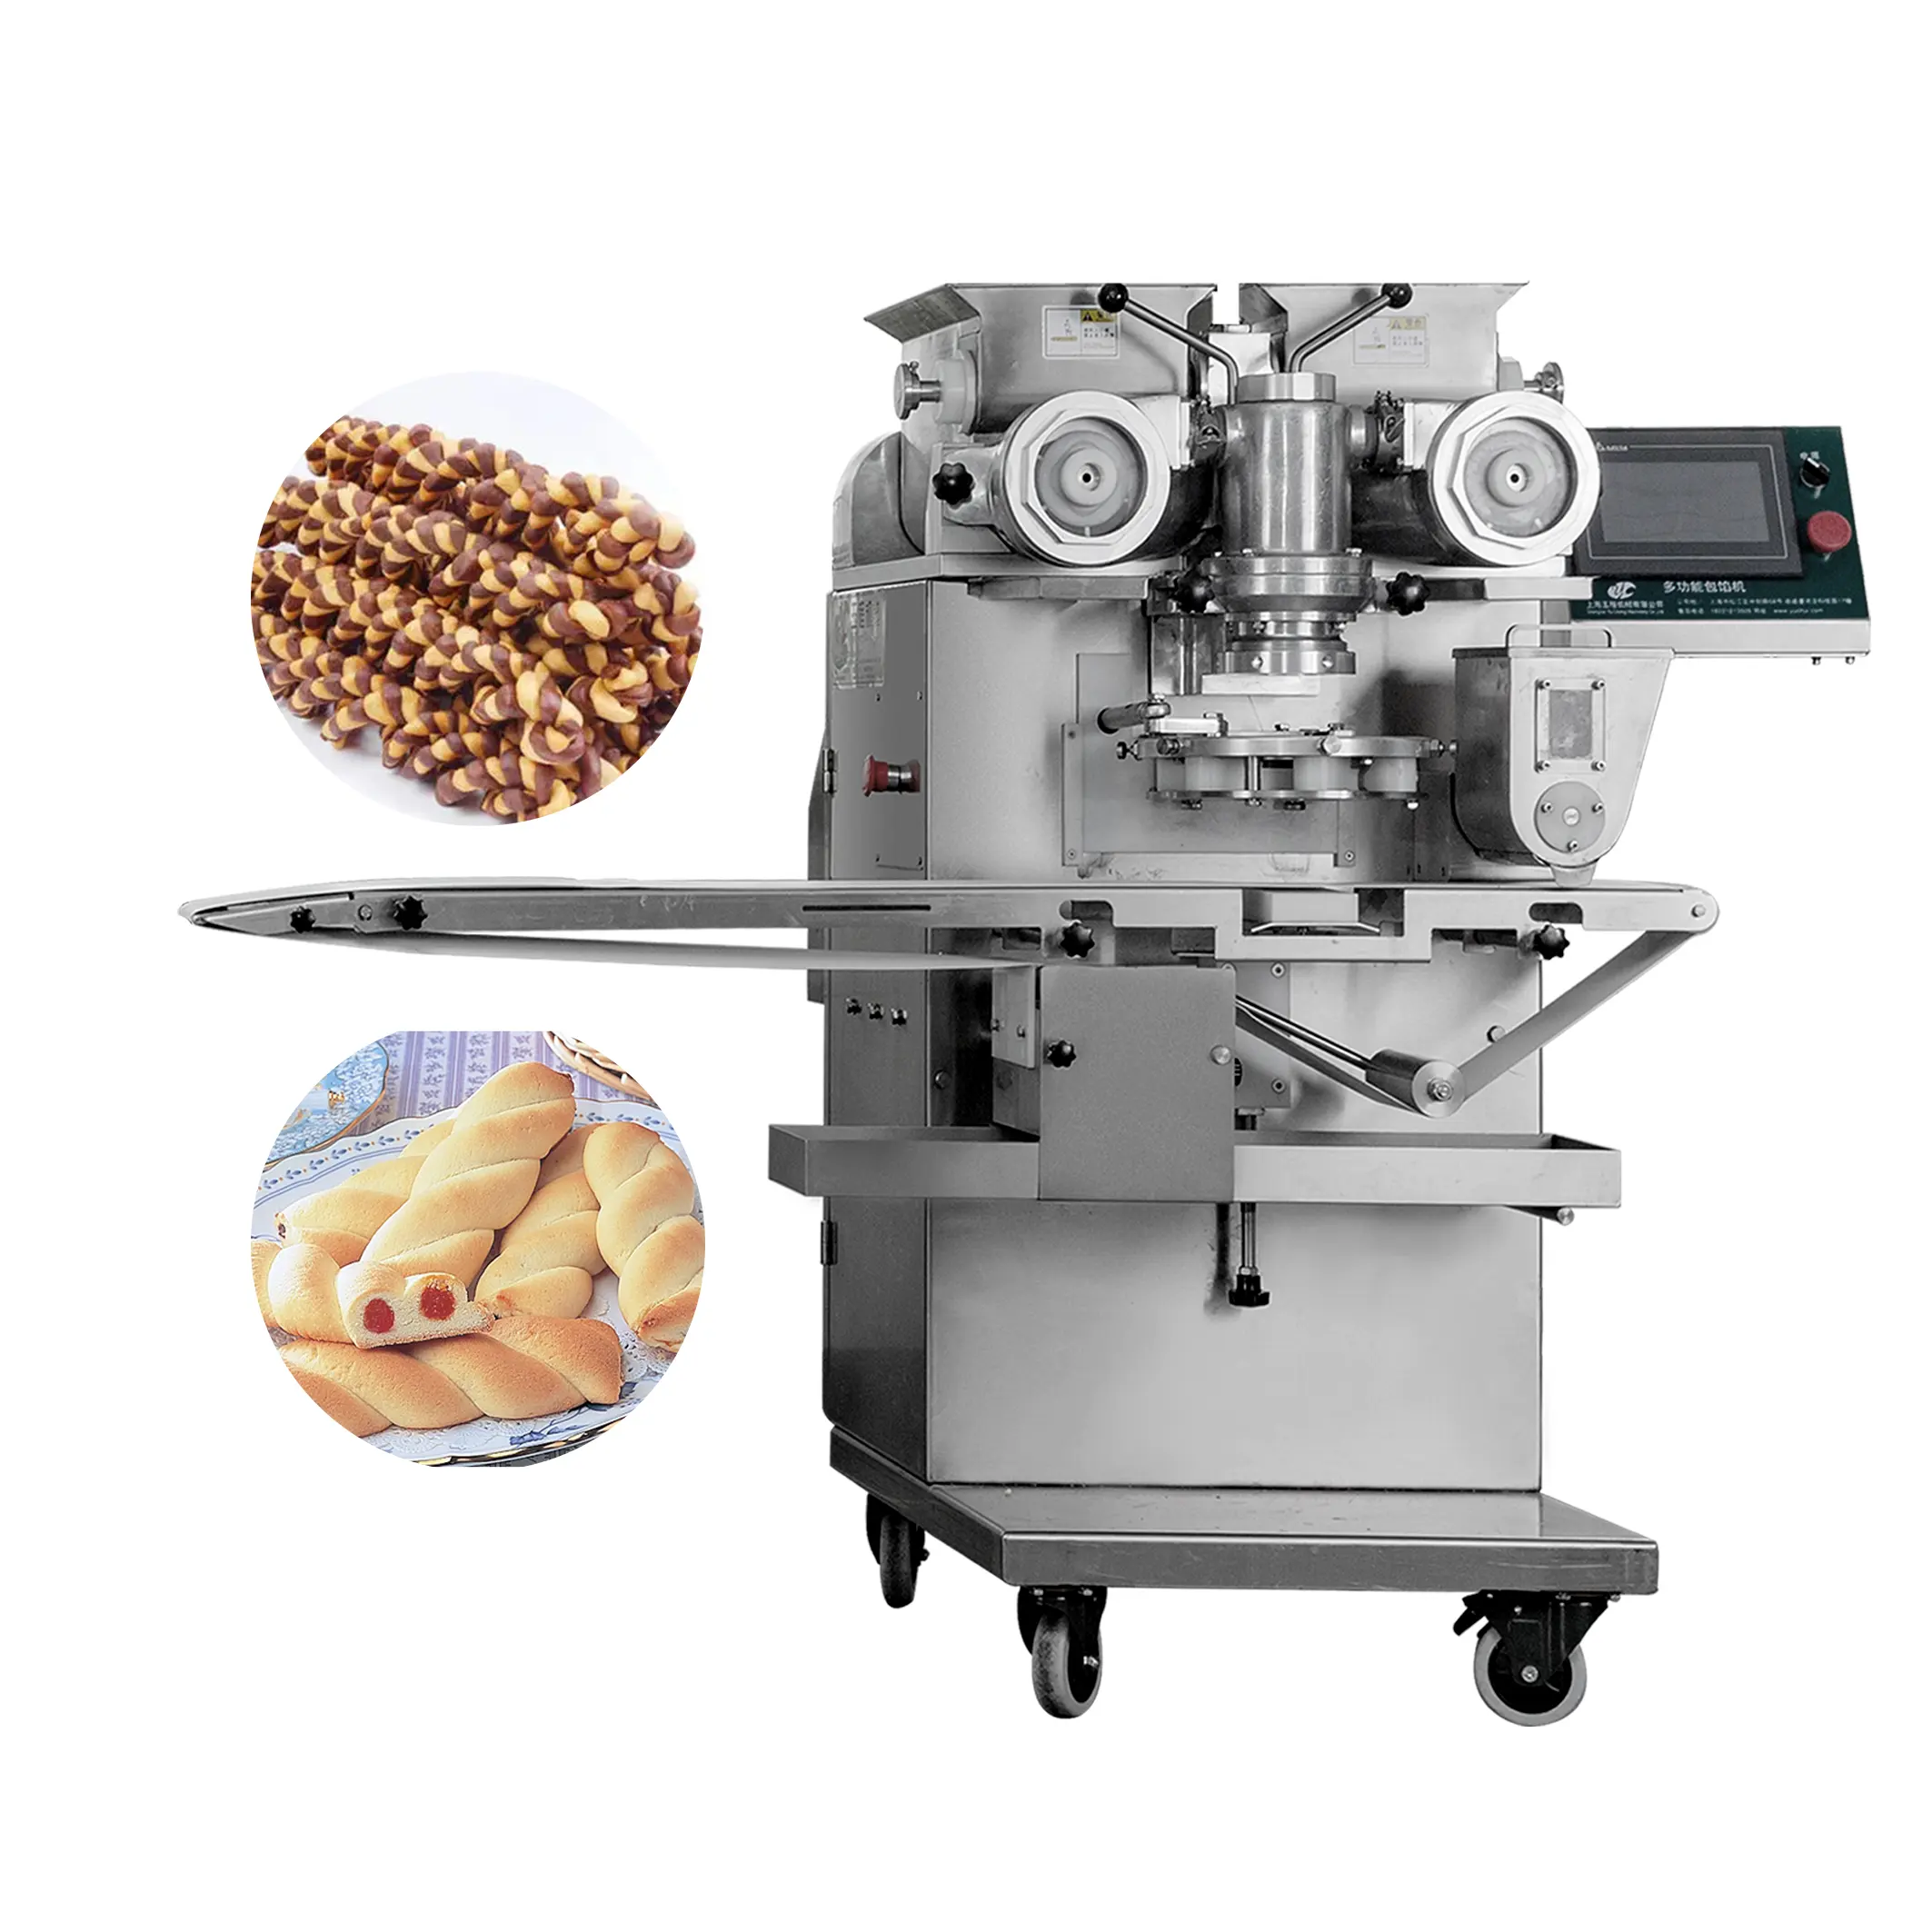 Shanghai Yucheng оборудование для хлебобулочных изделий, используется автоматическая машина для изготовления печенья